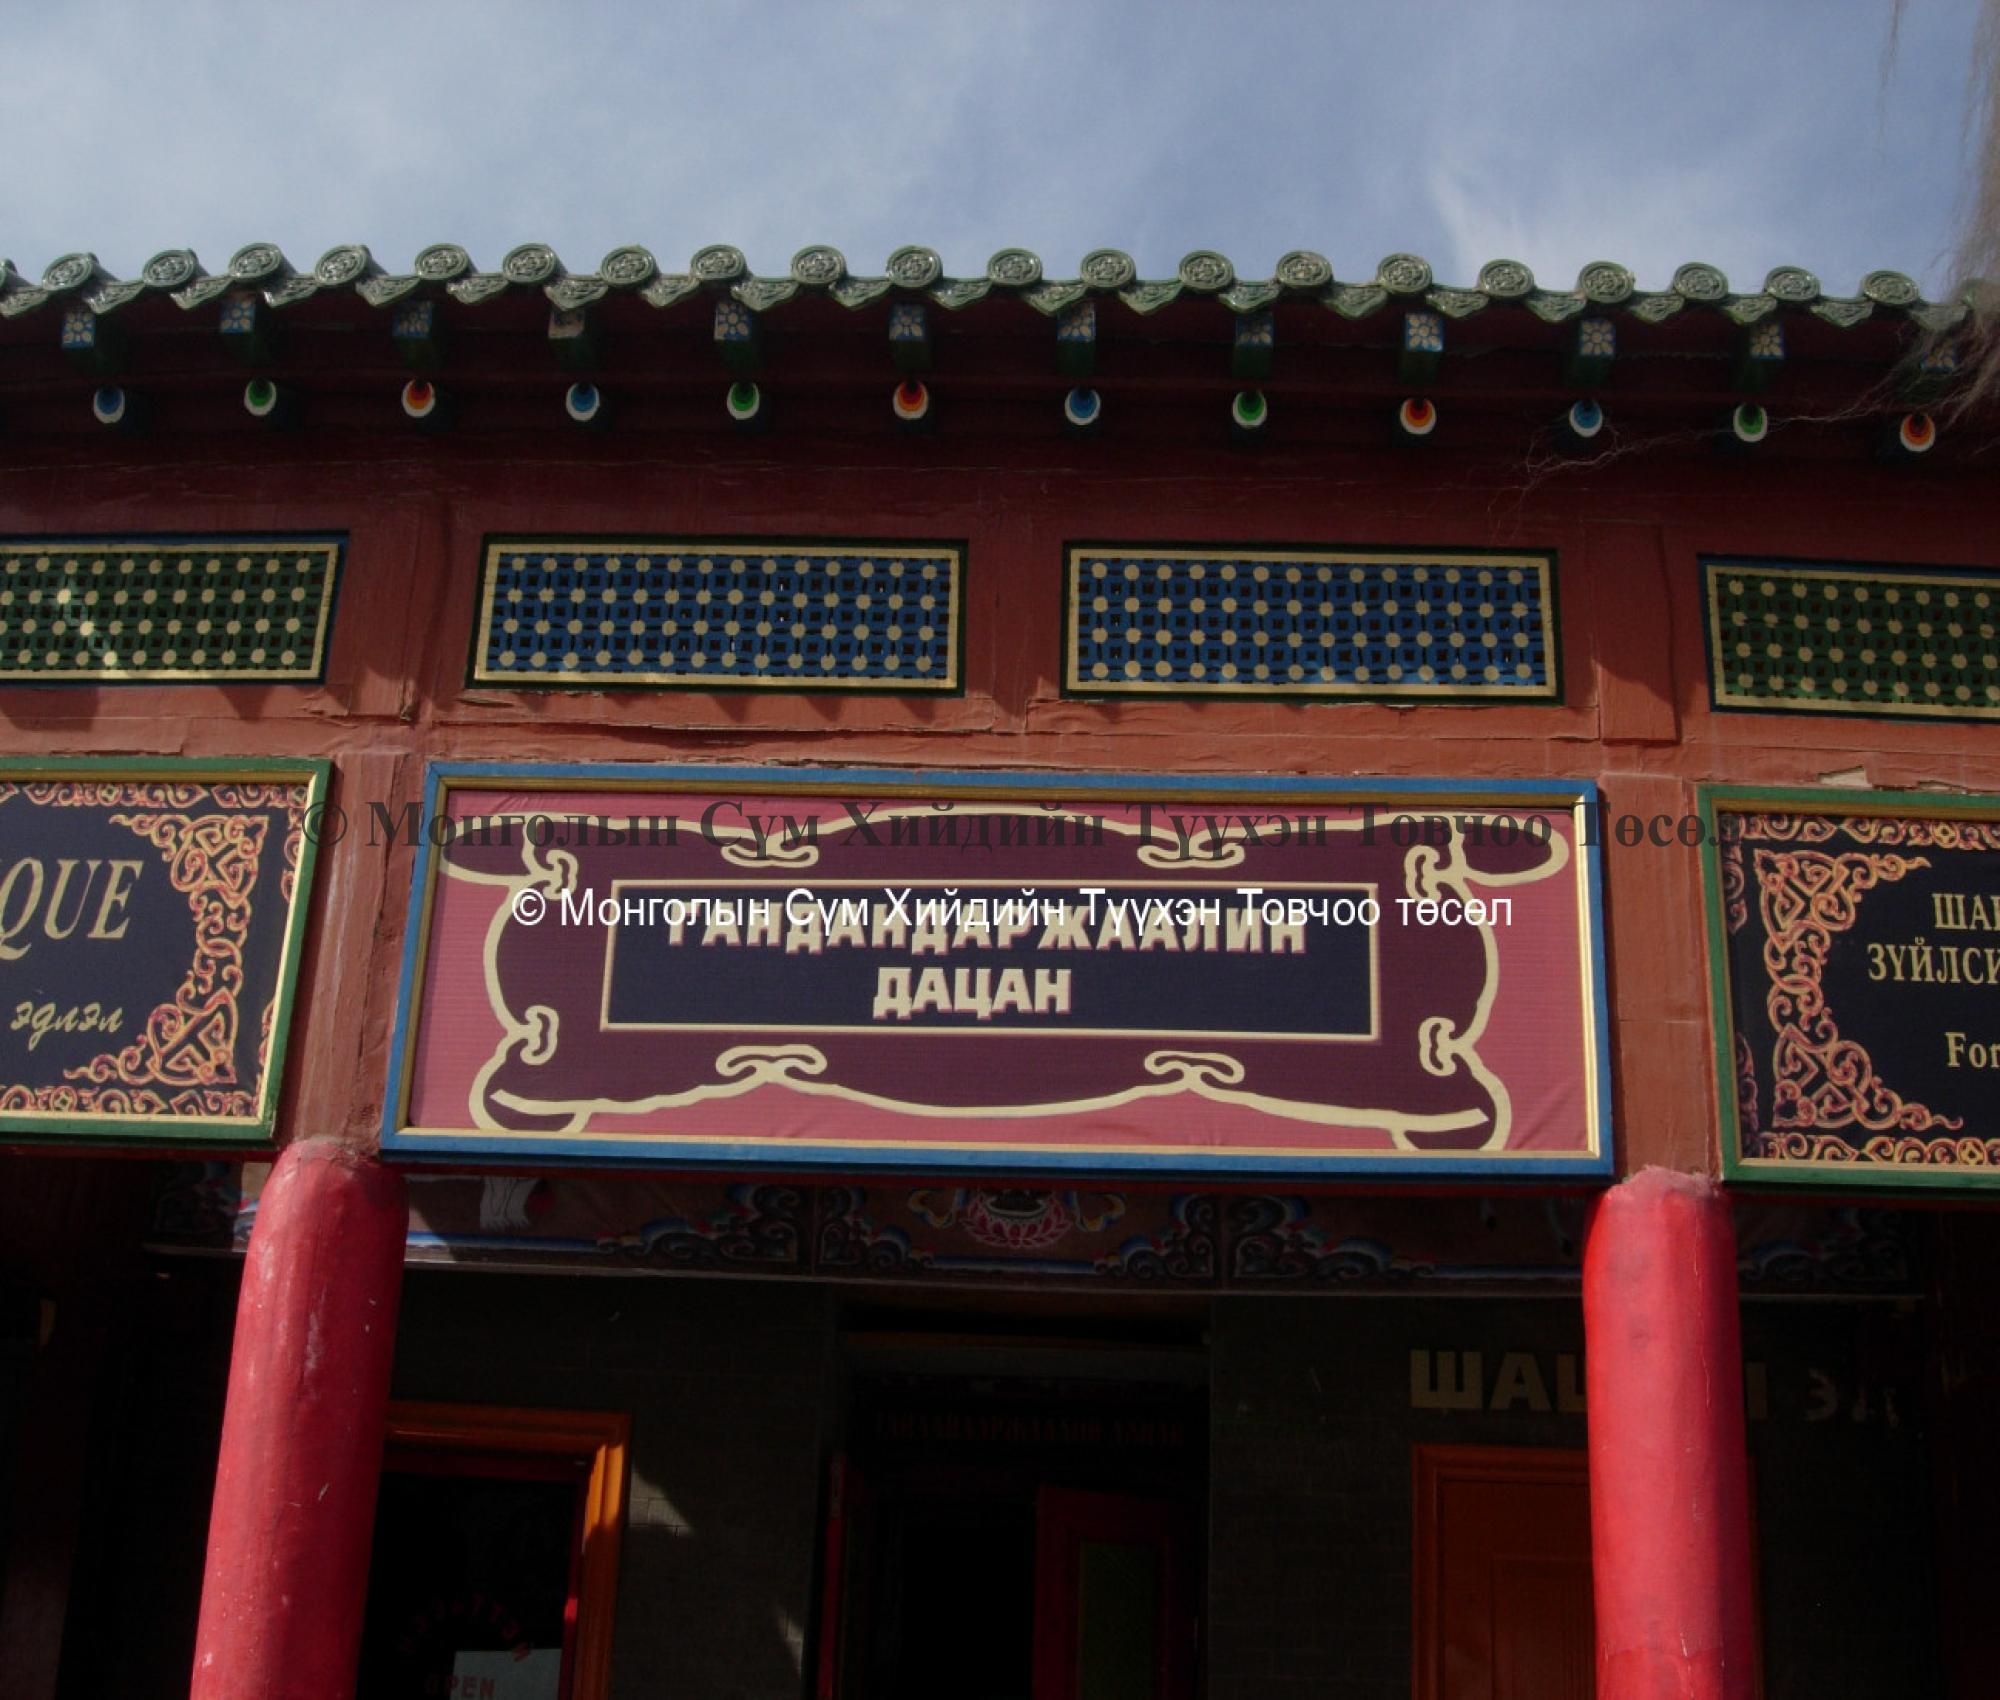 Facade of the temple